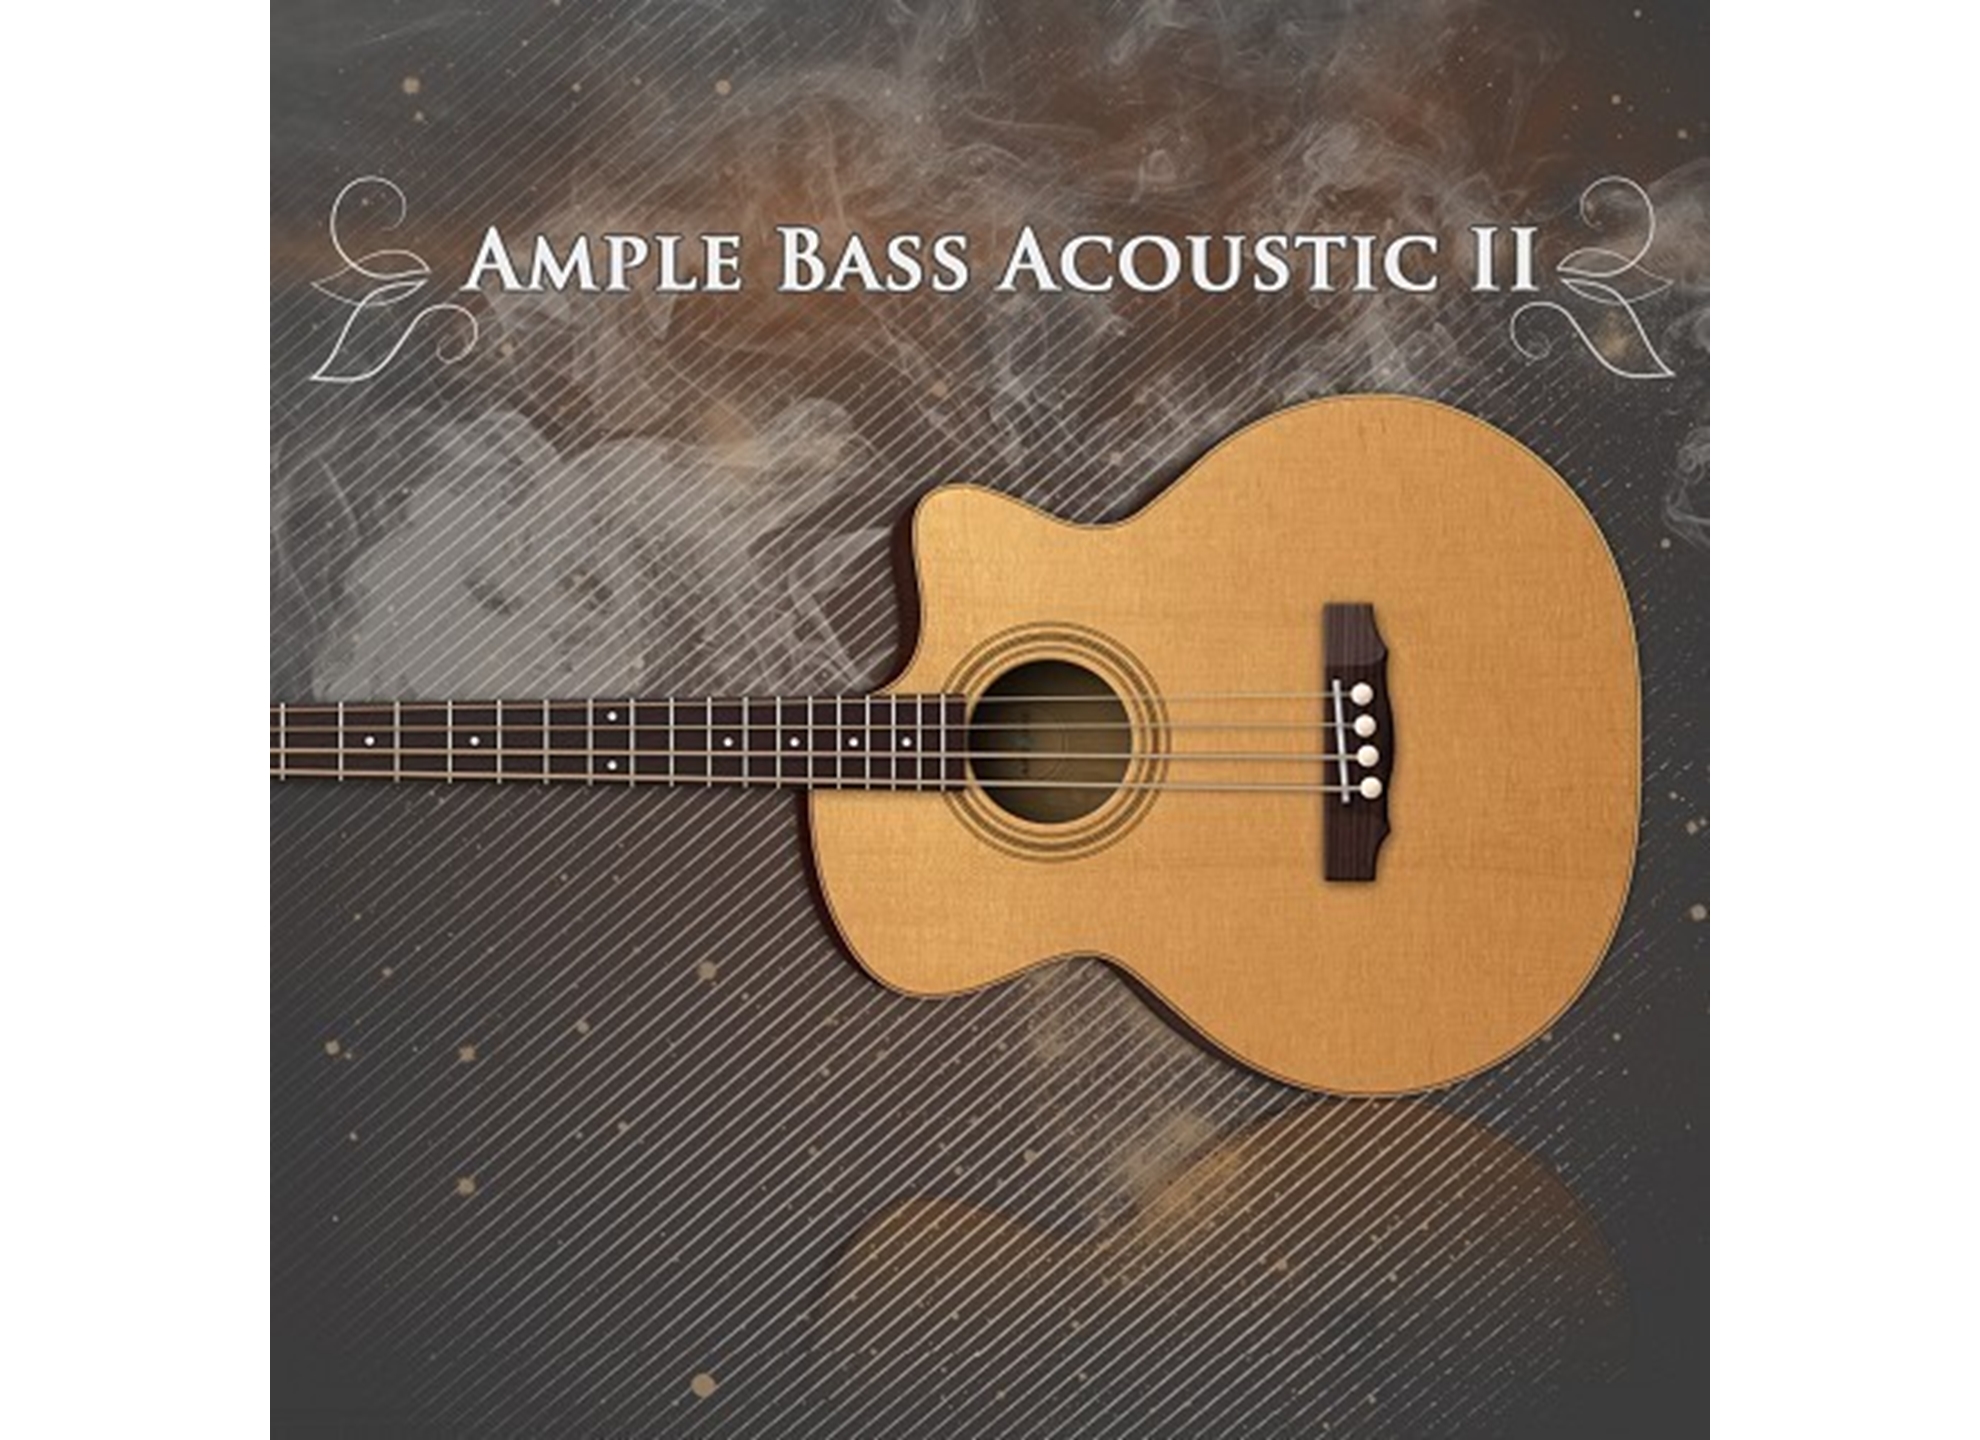 Ample Bass Acoustic III